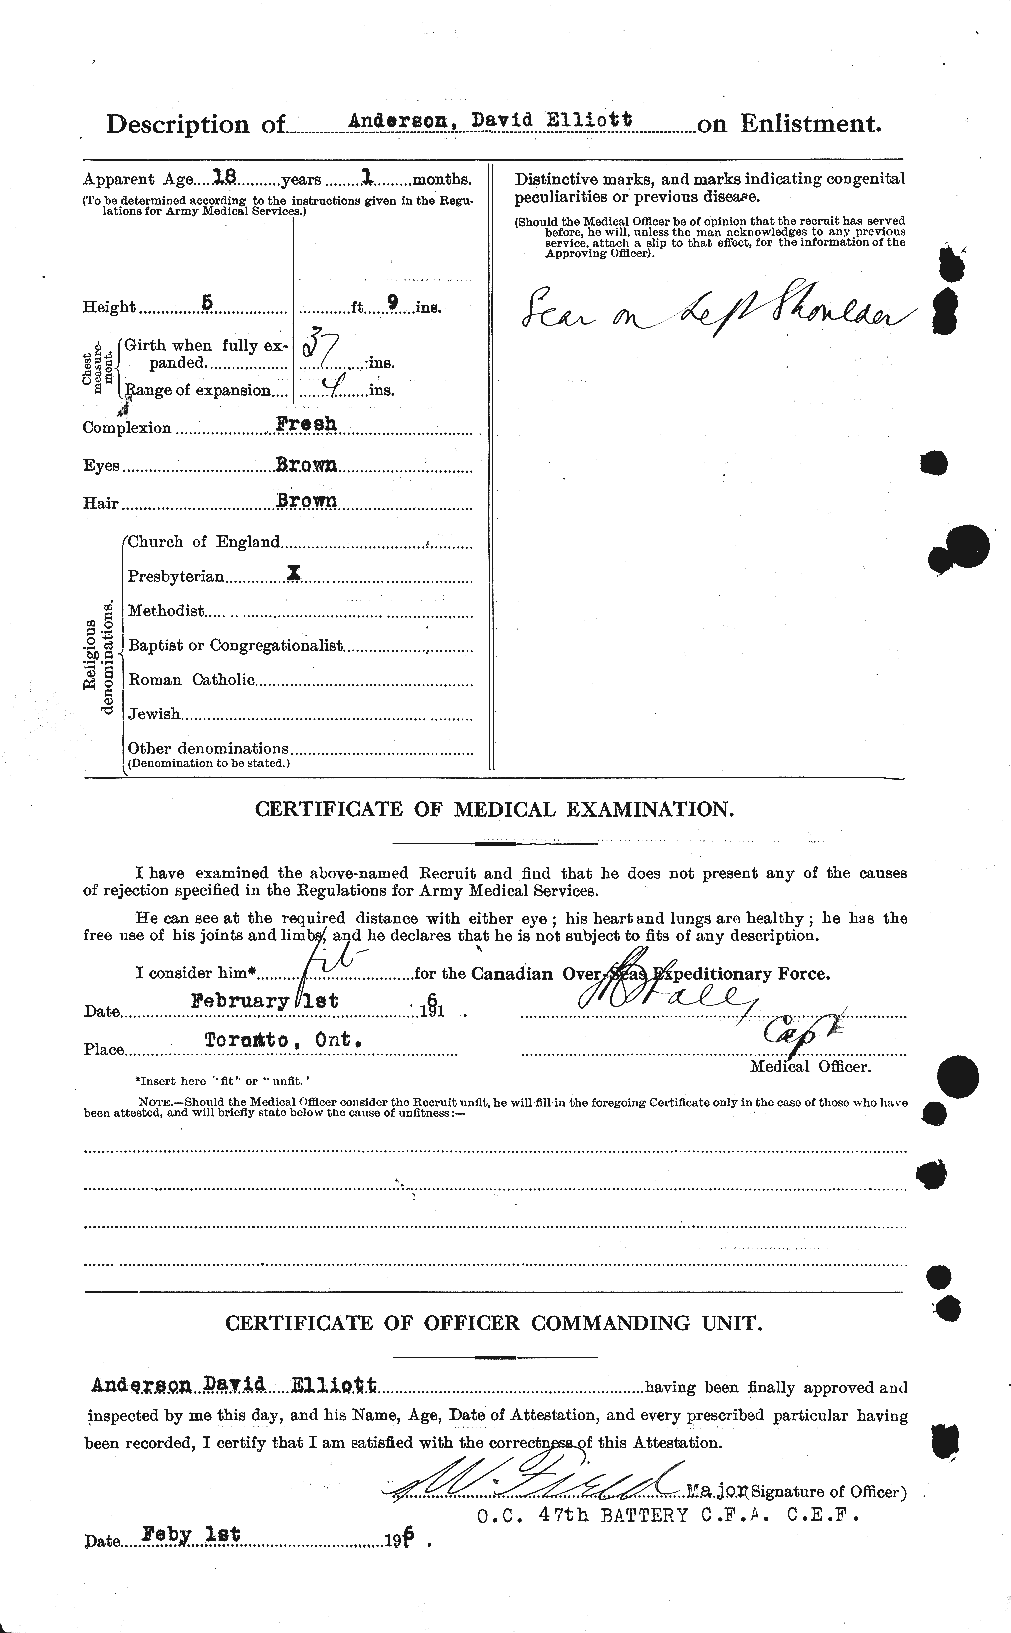 Dossiers du Personnel de la Première Guerre mondiale - CEC 210013b